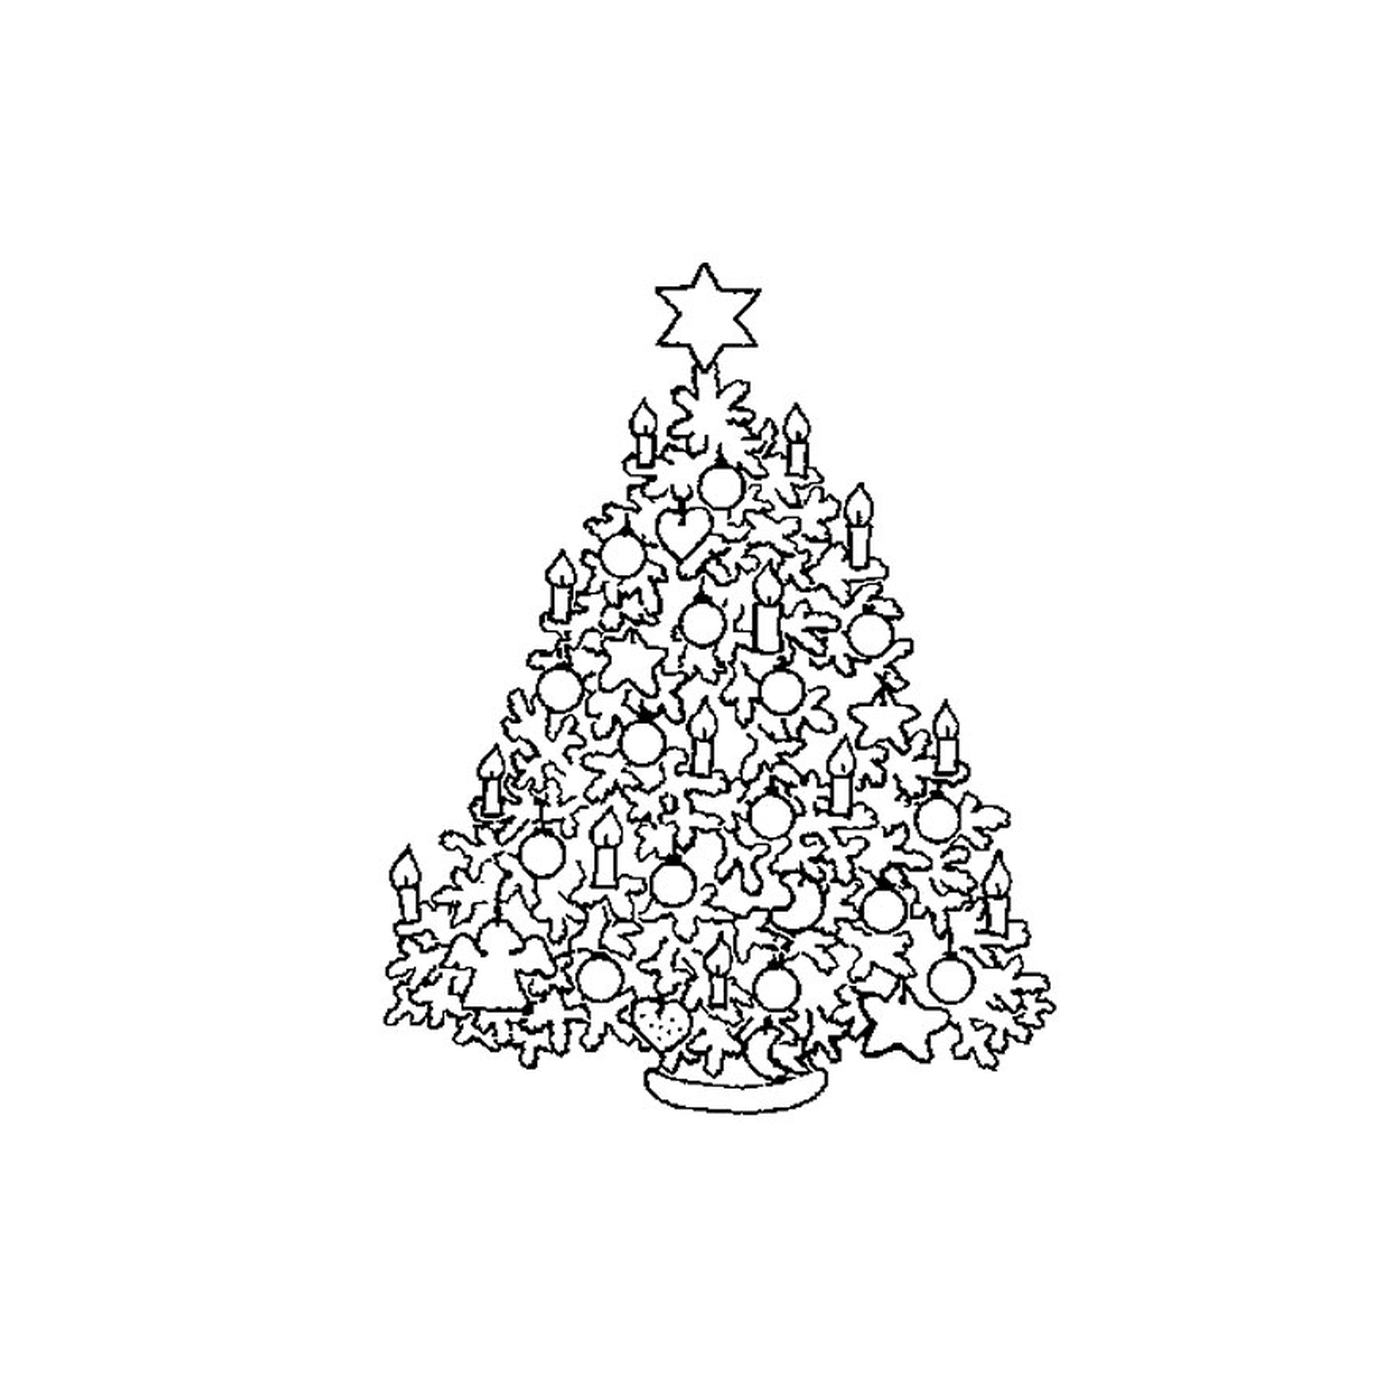  एक क्रिसमस का पेड़ जो तारों से बना है 